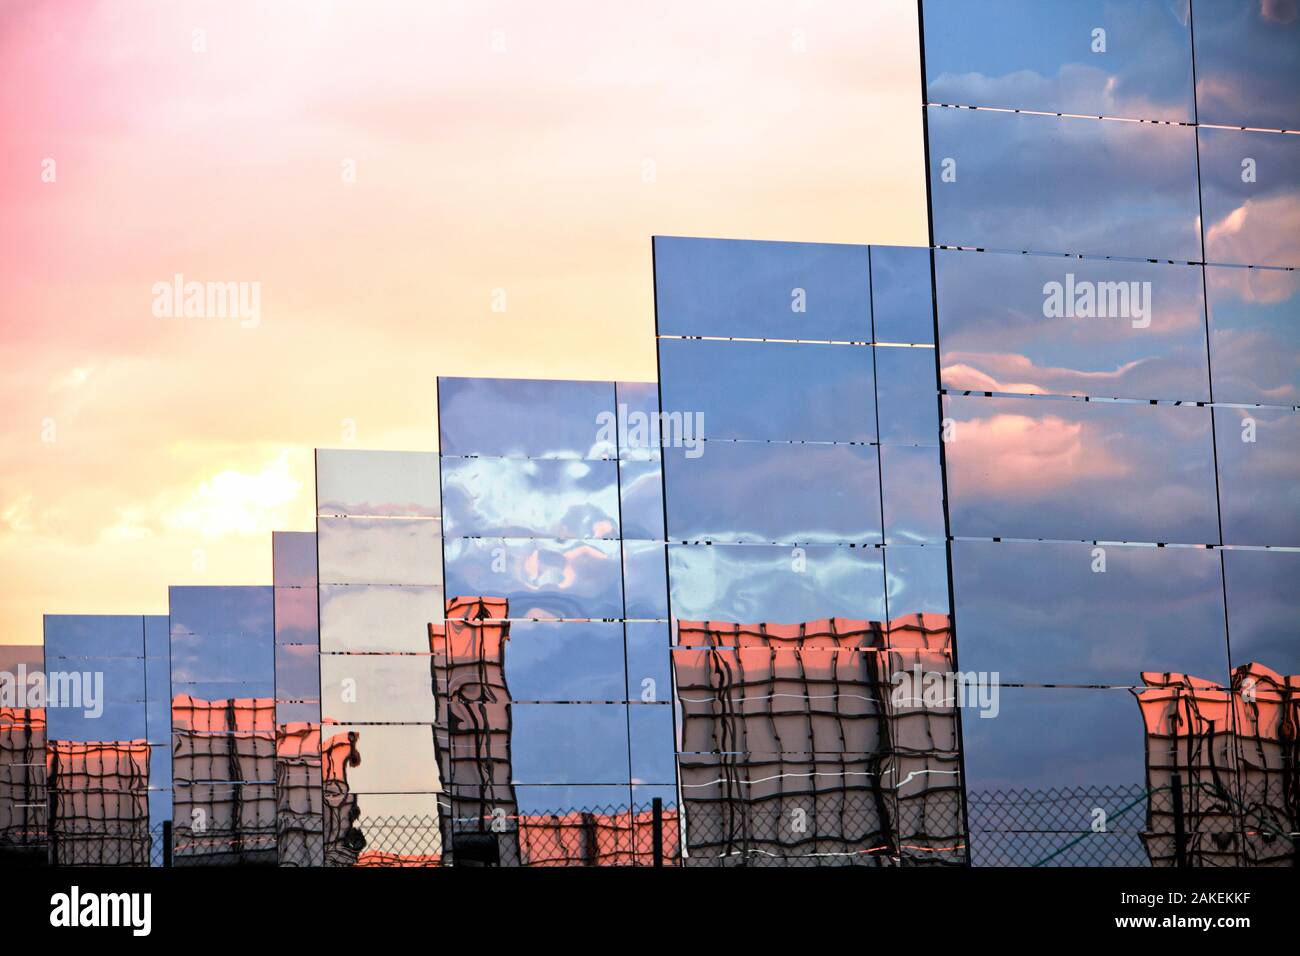 Heliostats, grandi specchi riflettenti dirigendo la luce del sole per la PS20 solare termico tower, il solo tale lavorazione torre solare attualmente in tutto il mondo. Sanlucar La Mayor, Andalusia. Giugno 2011 Foto Stock